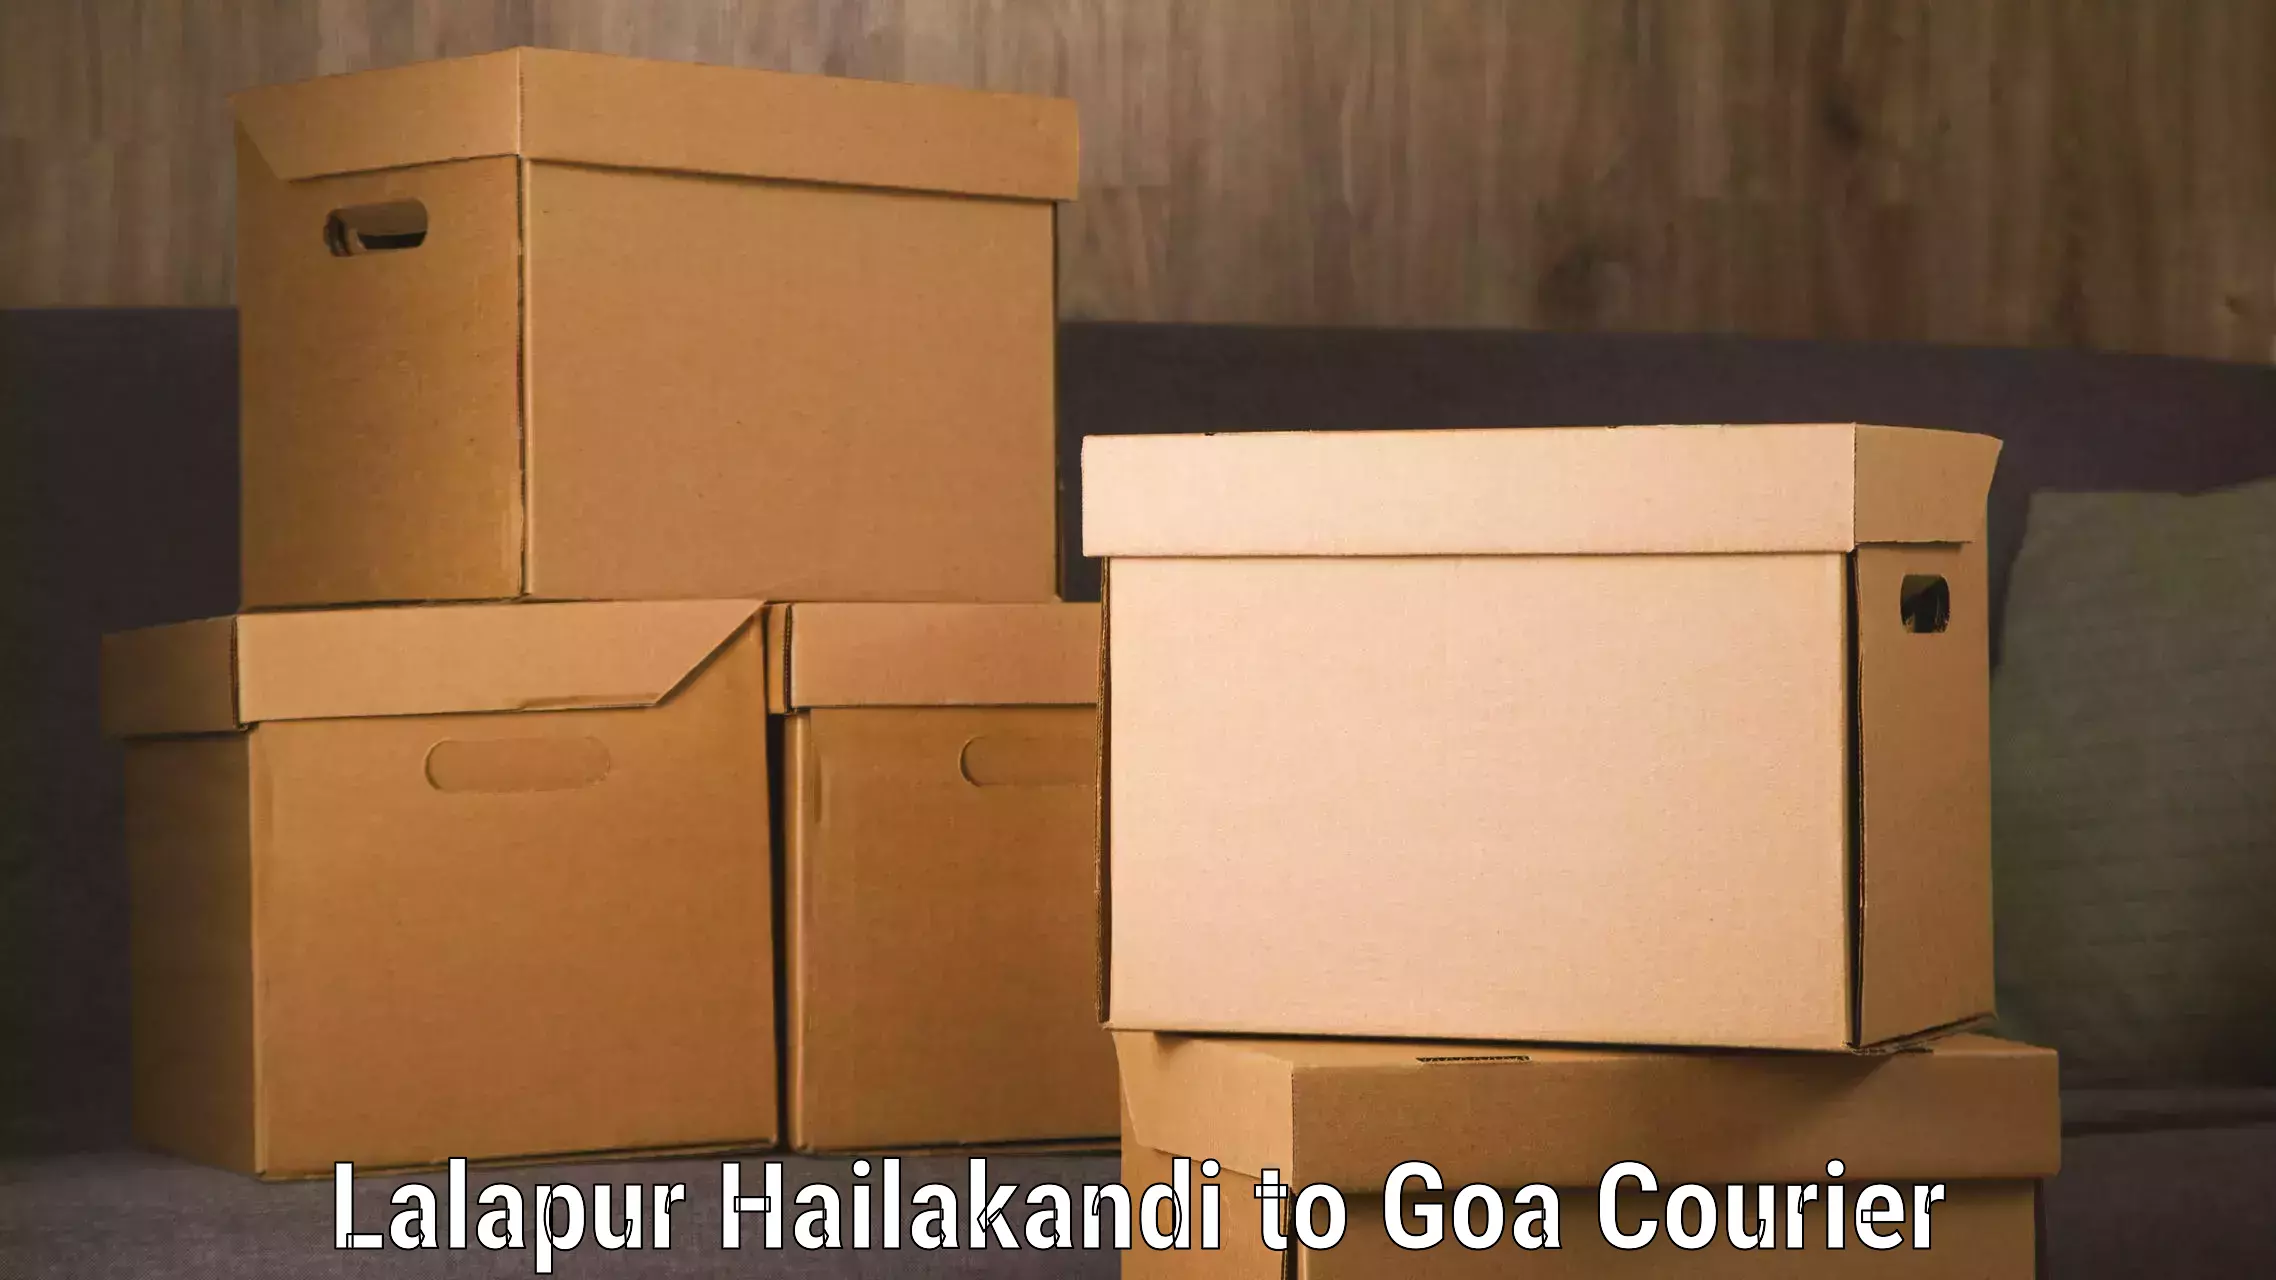 Luggage transport company Lalapur Hailakandi to Ponda